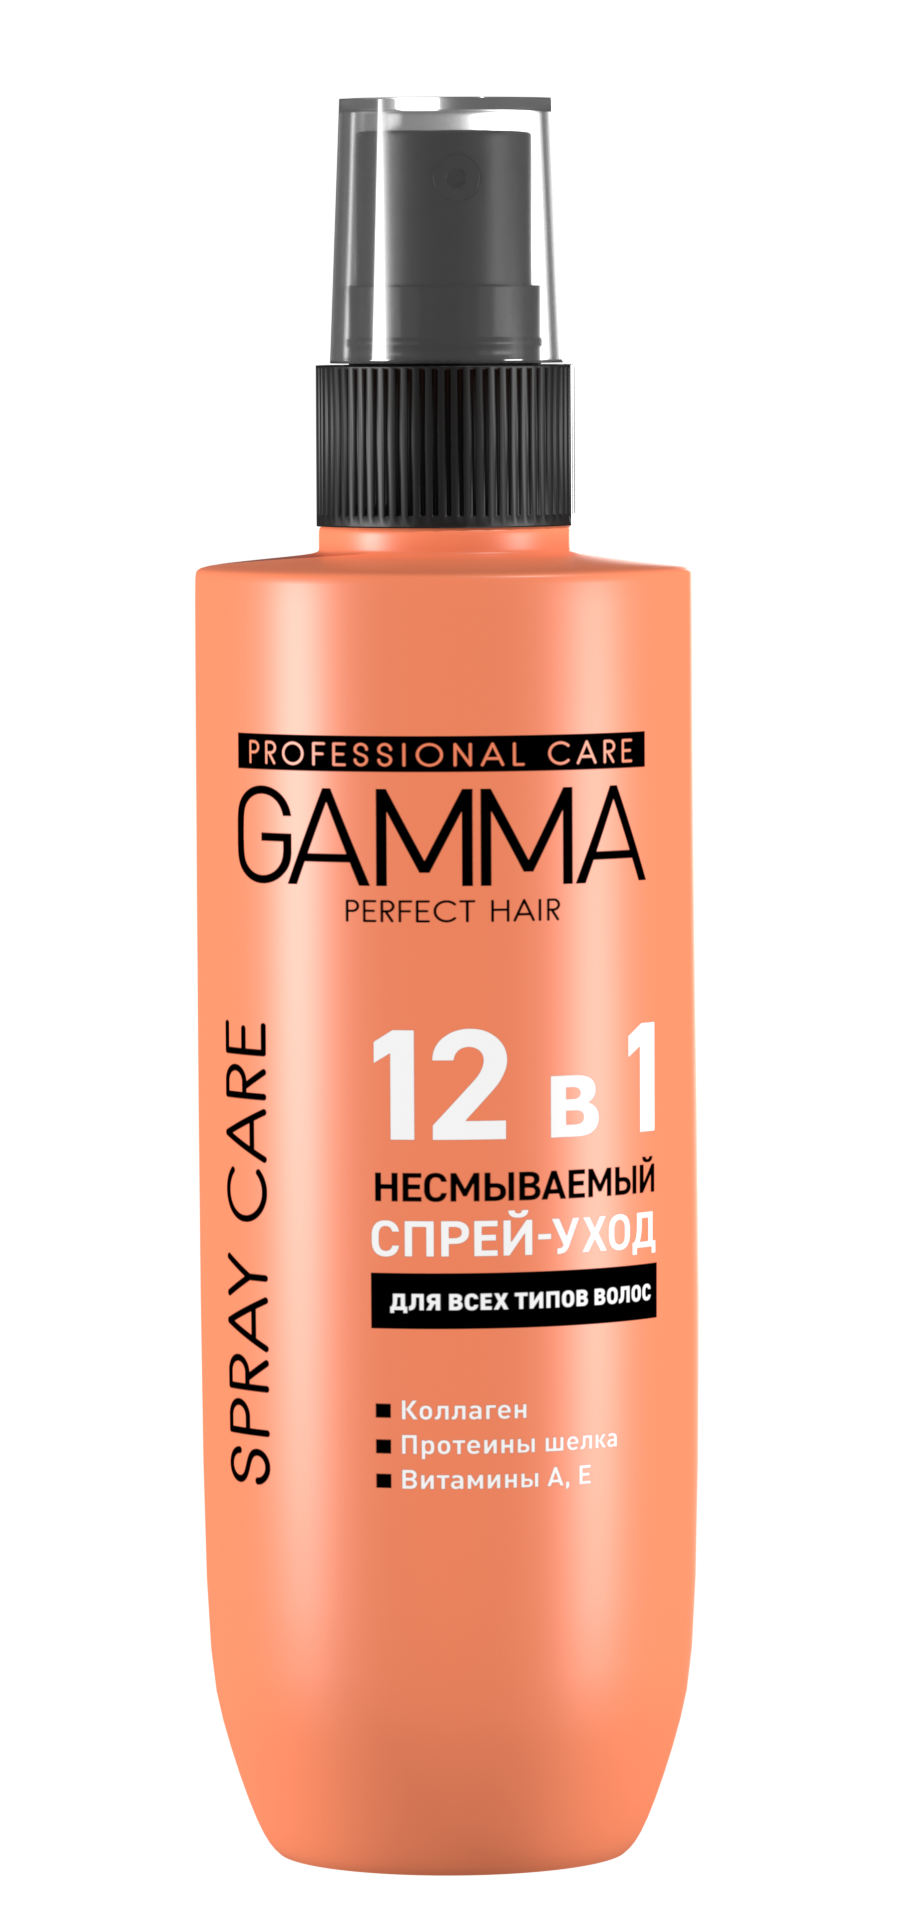 Несмываемый спрей-уход GAMMA Perfect Hair 12 в 1